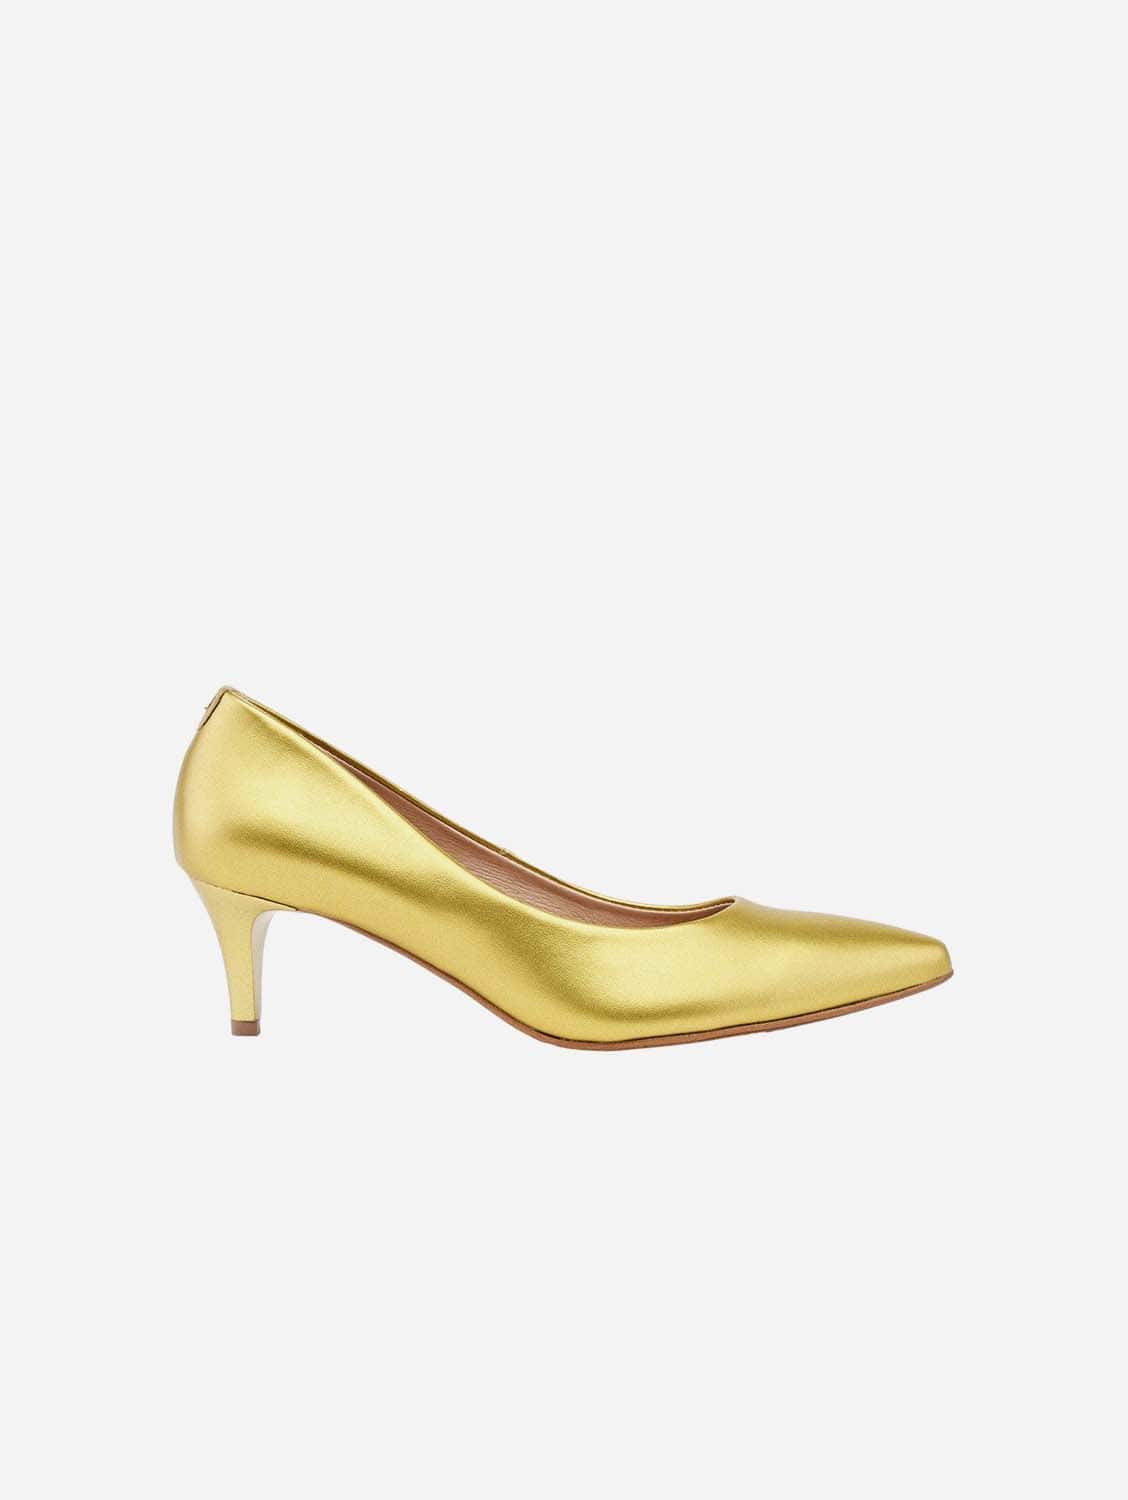 Empress of Heels Golden Glamour - vegan 55mm heels 39EU - 6UK - 9US